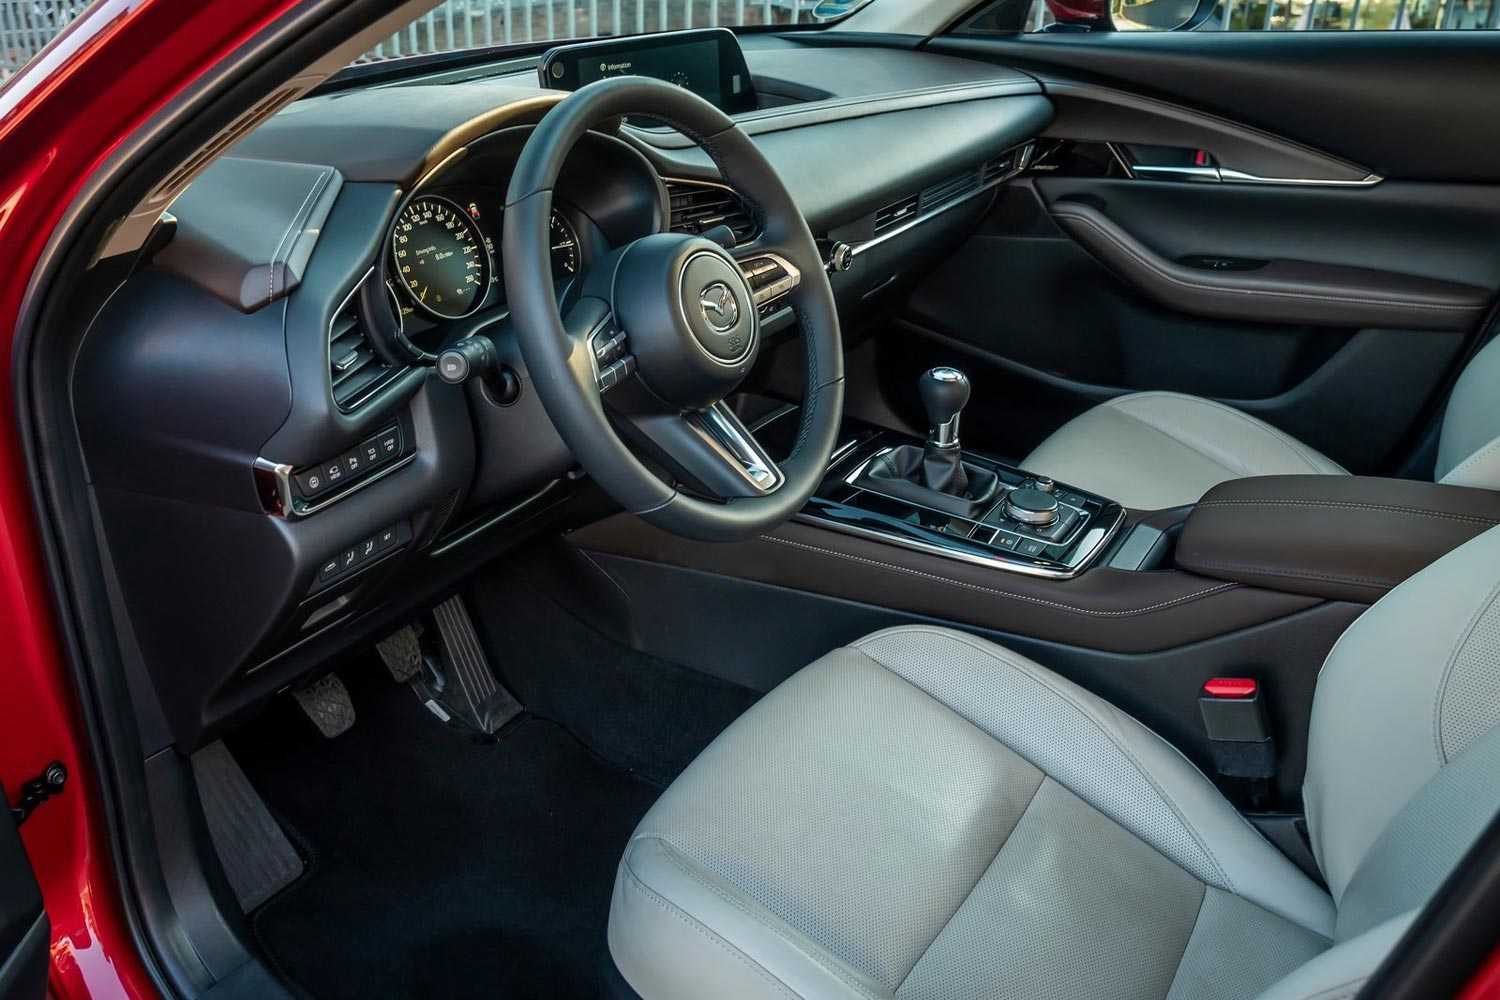 Mazda cx-3 2019: фото, цена, комплектации, старт продаж в россии